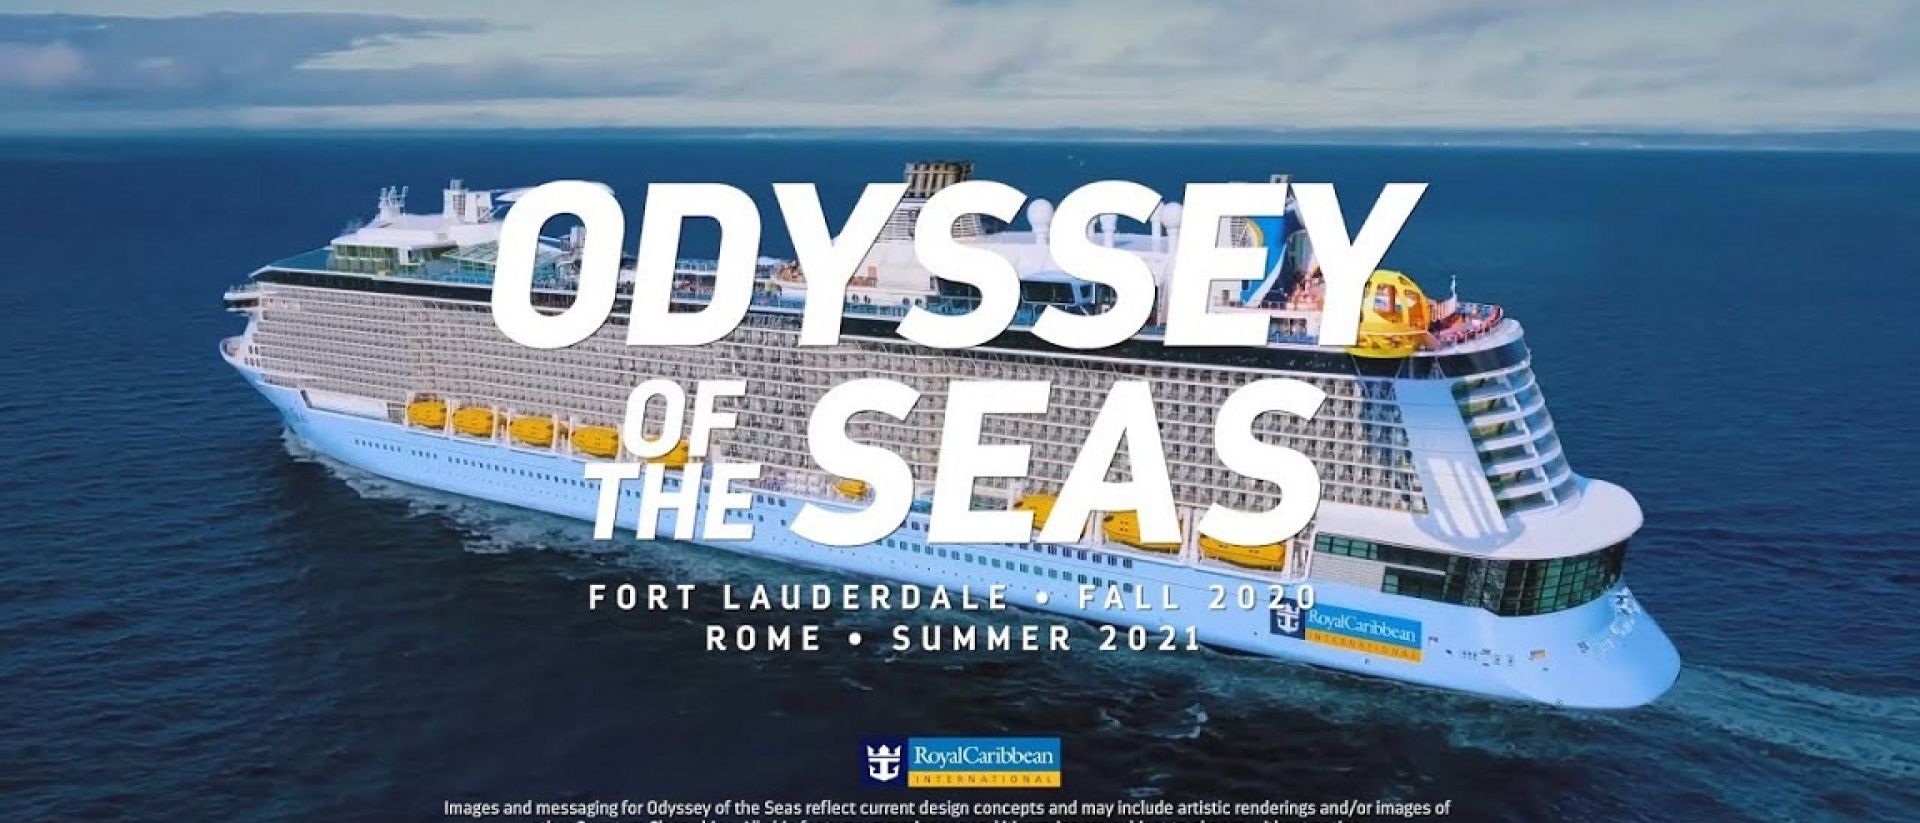 El Odyssey of the Seas llega a Europa | Expreso